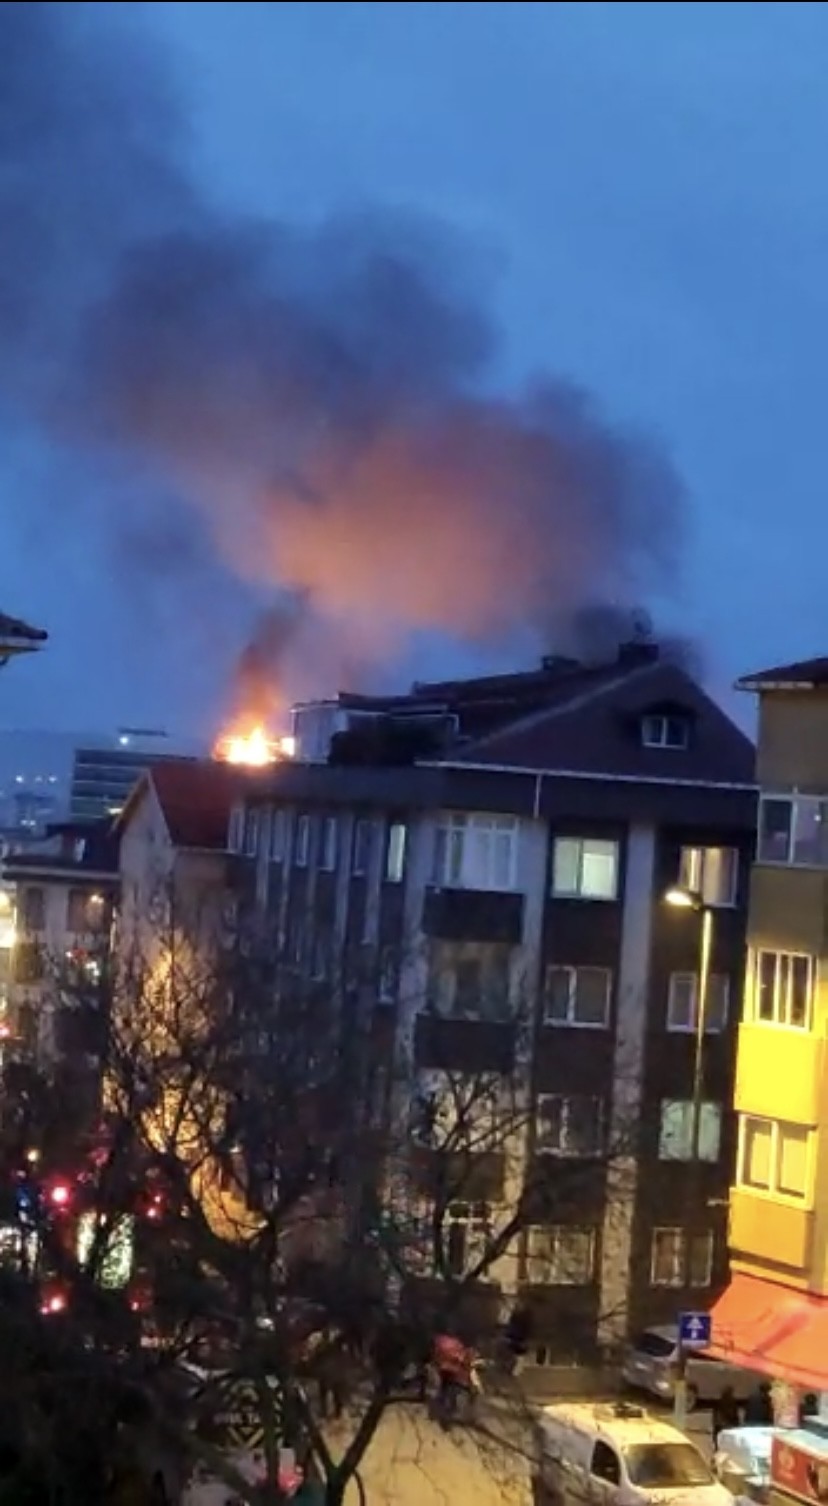 İstanbul Üsküdar’da, 5 katlı binanın çatısında çıkan yangın paniğe yol açtı. Kısa sürede yan binaya da sıçrayan yangın, diğer ilçelerden gelen ...